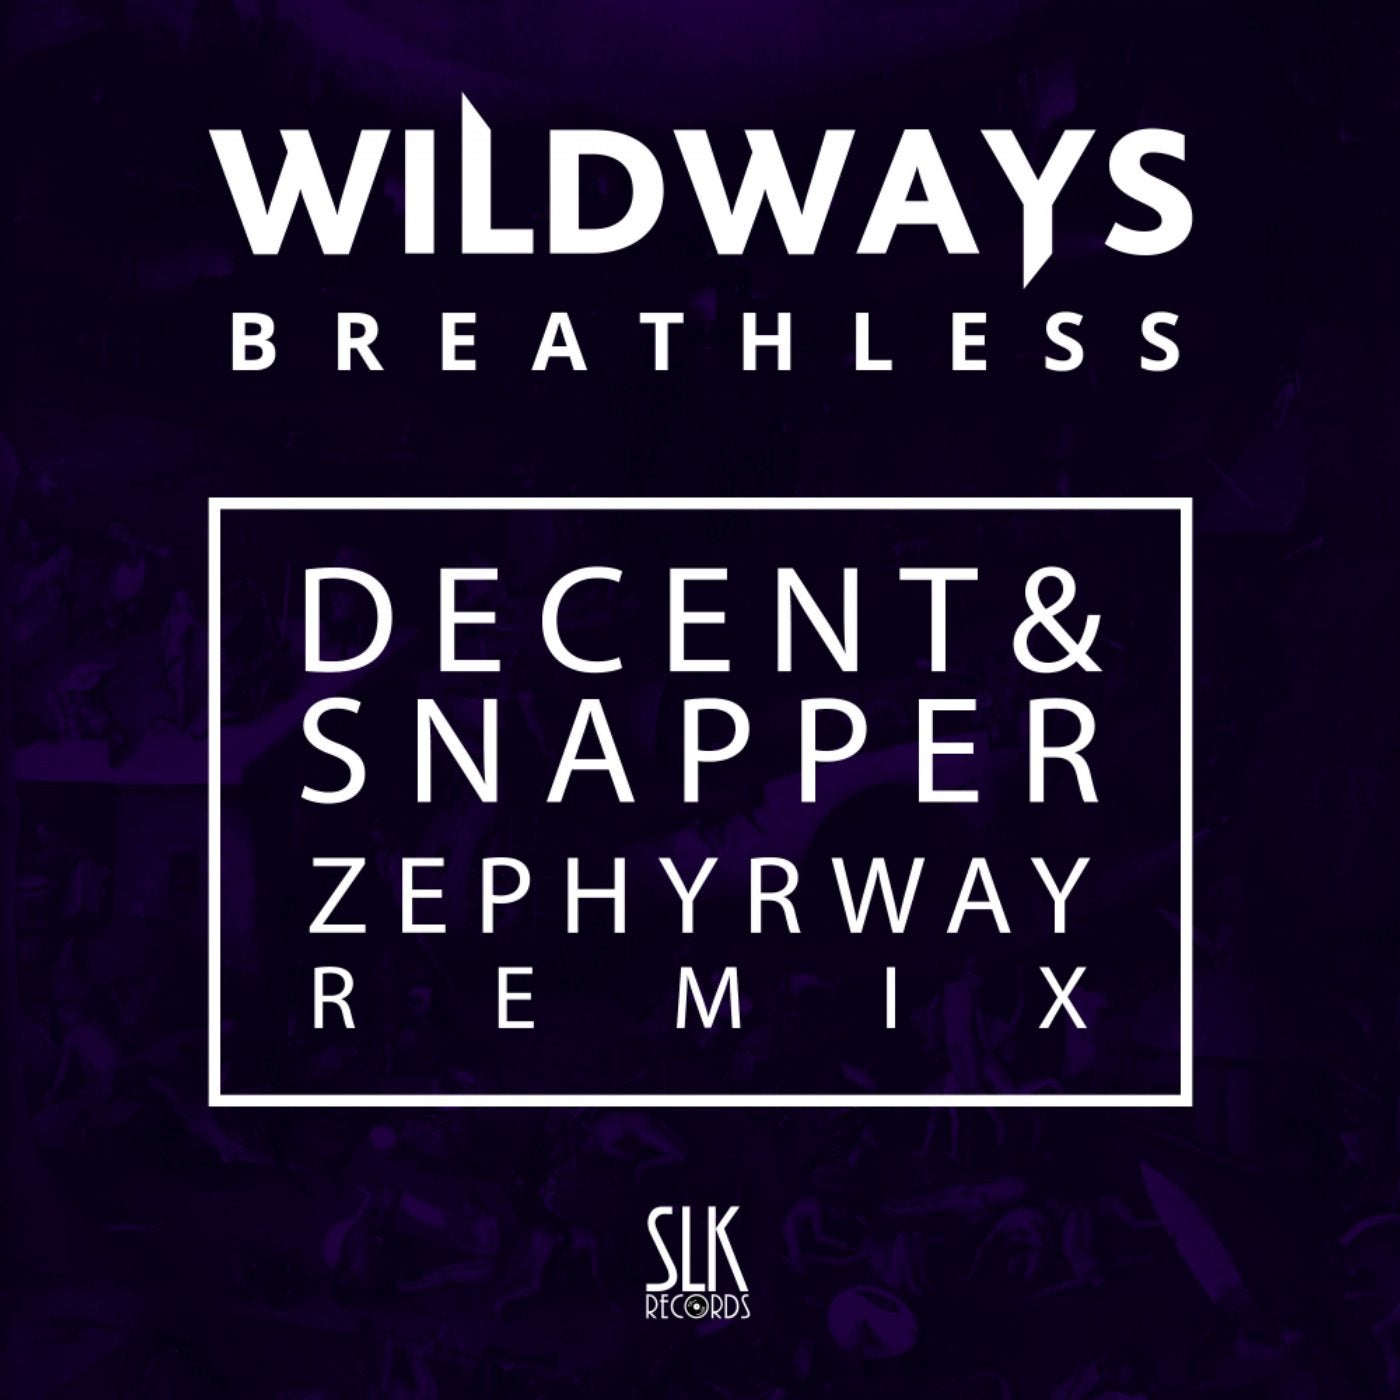 Wildways - Breathless (Decent & Snapper & Zephyrway Remix)